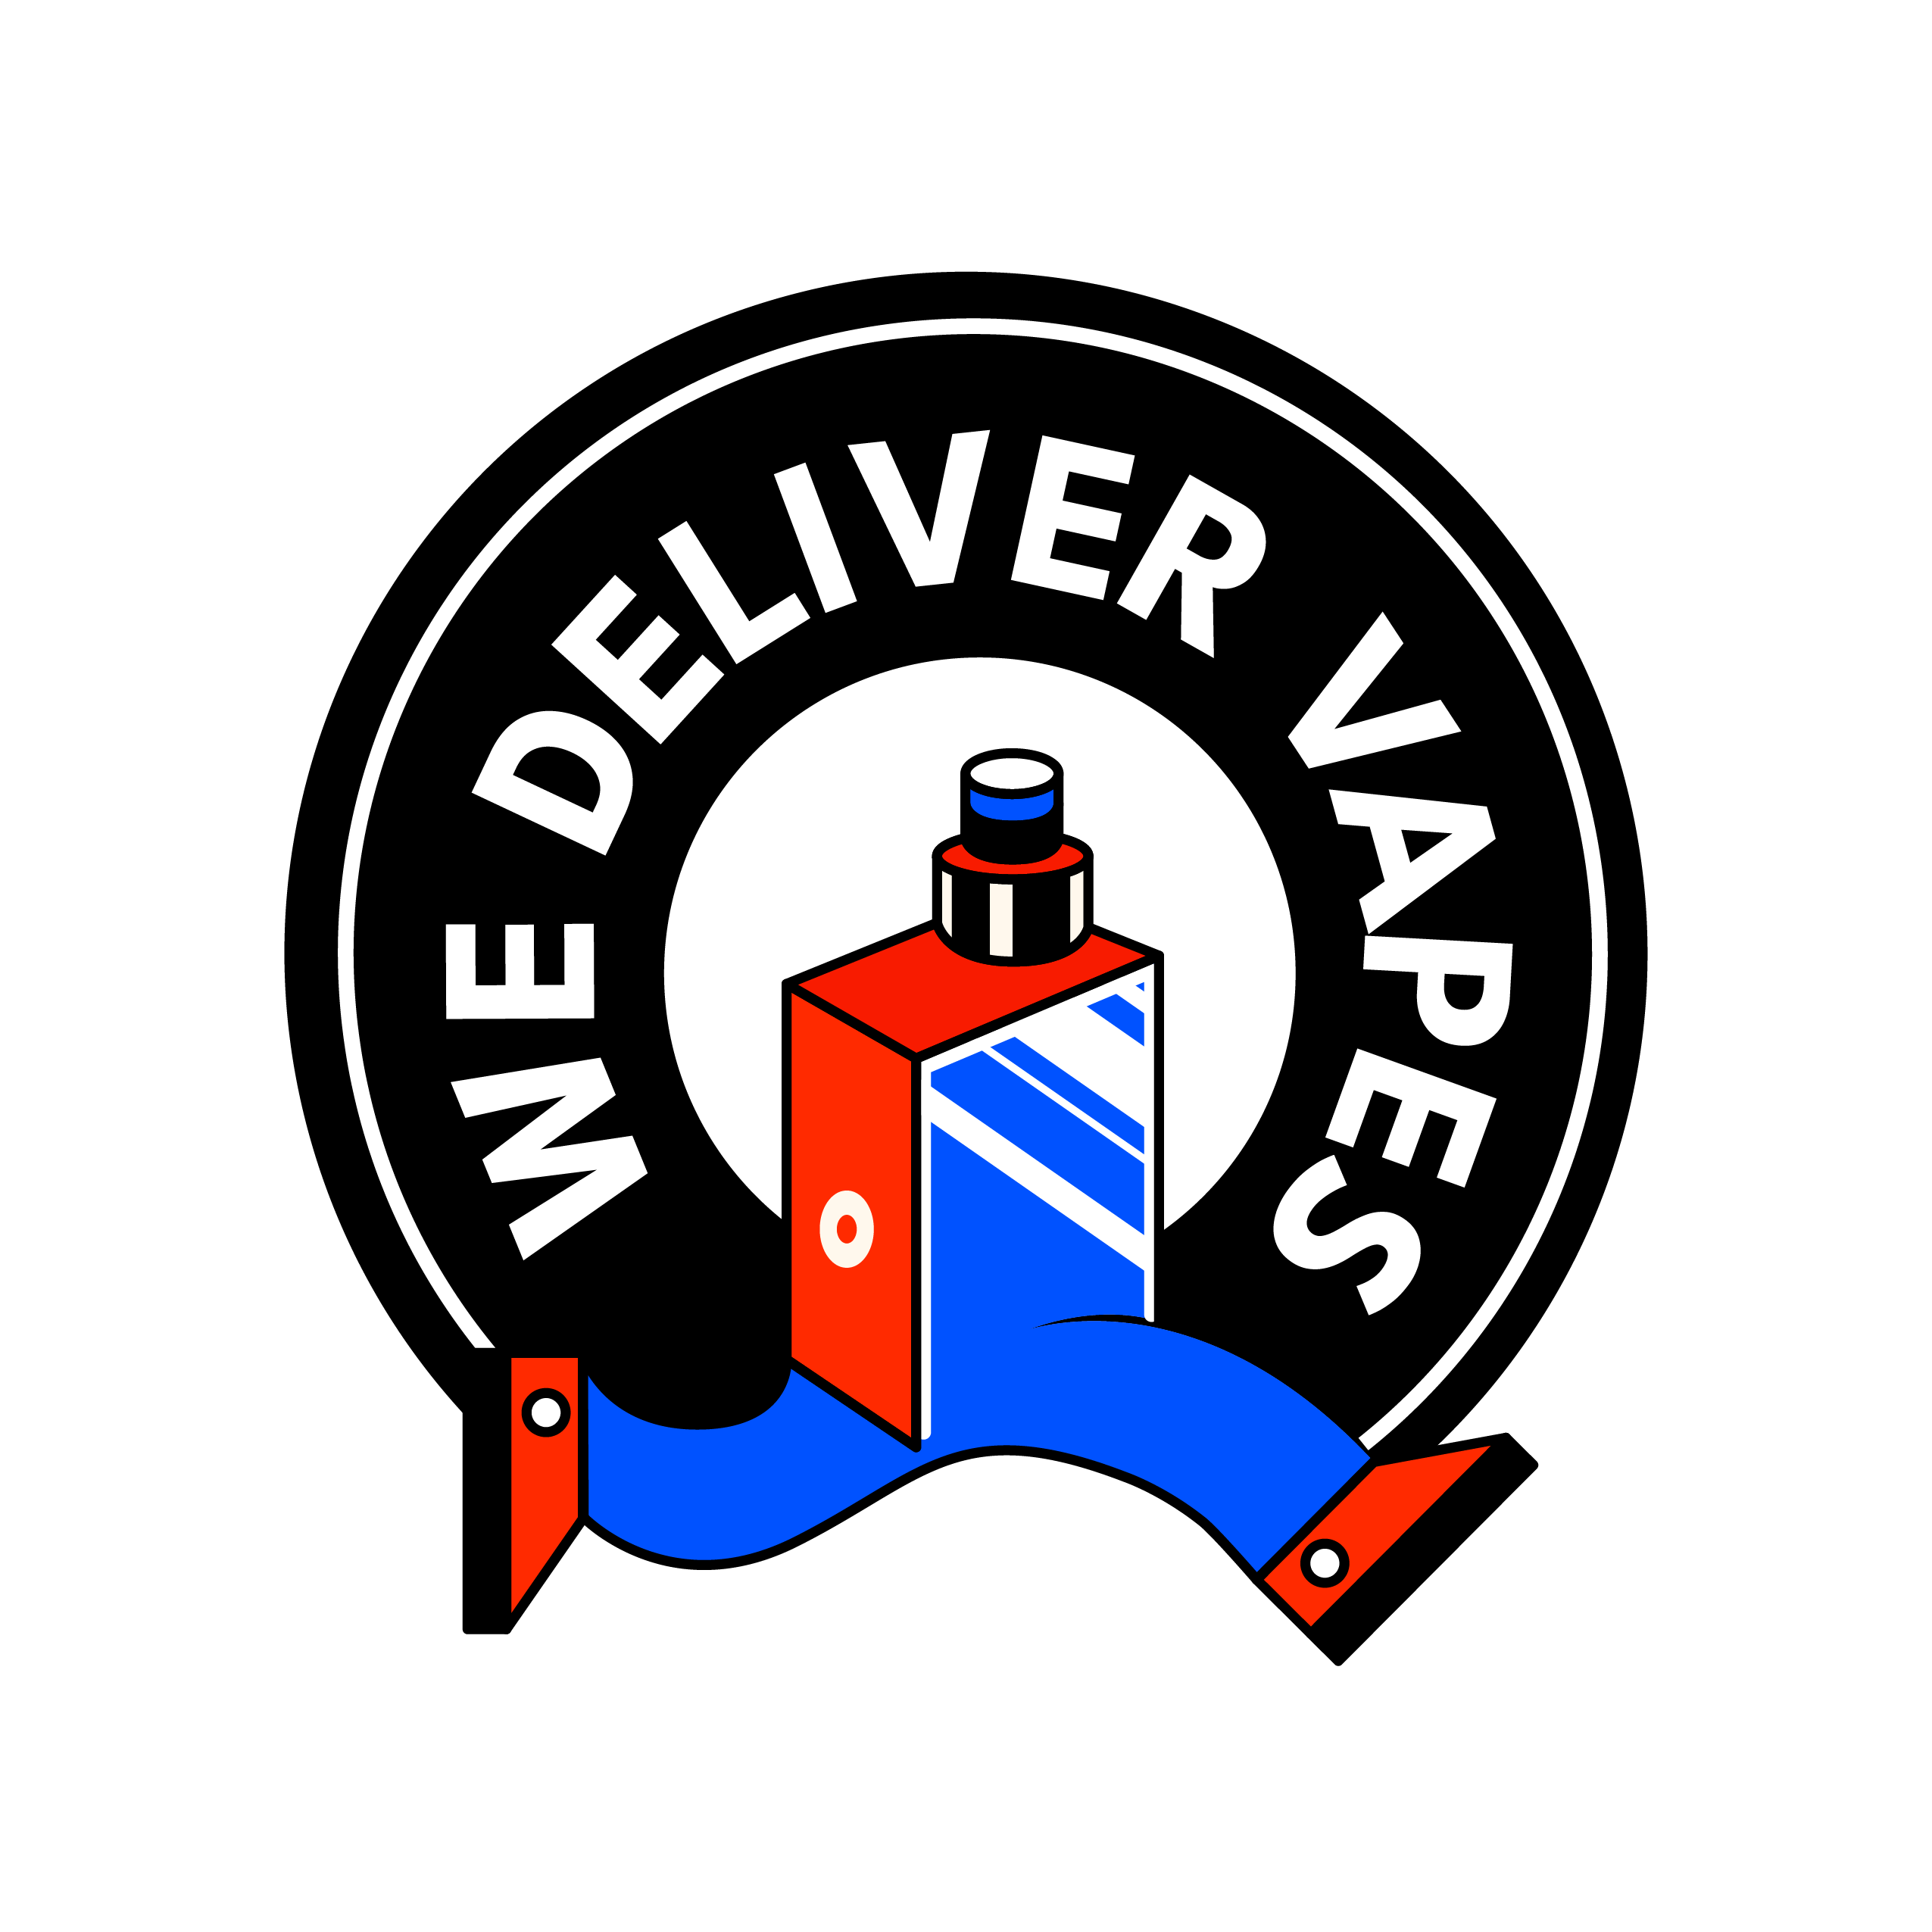 We deliver vapes